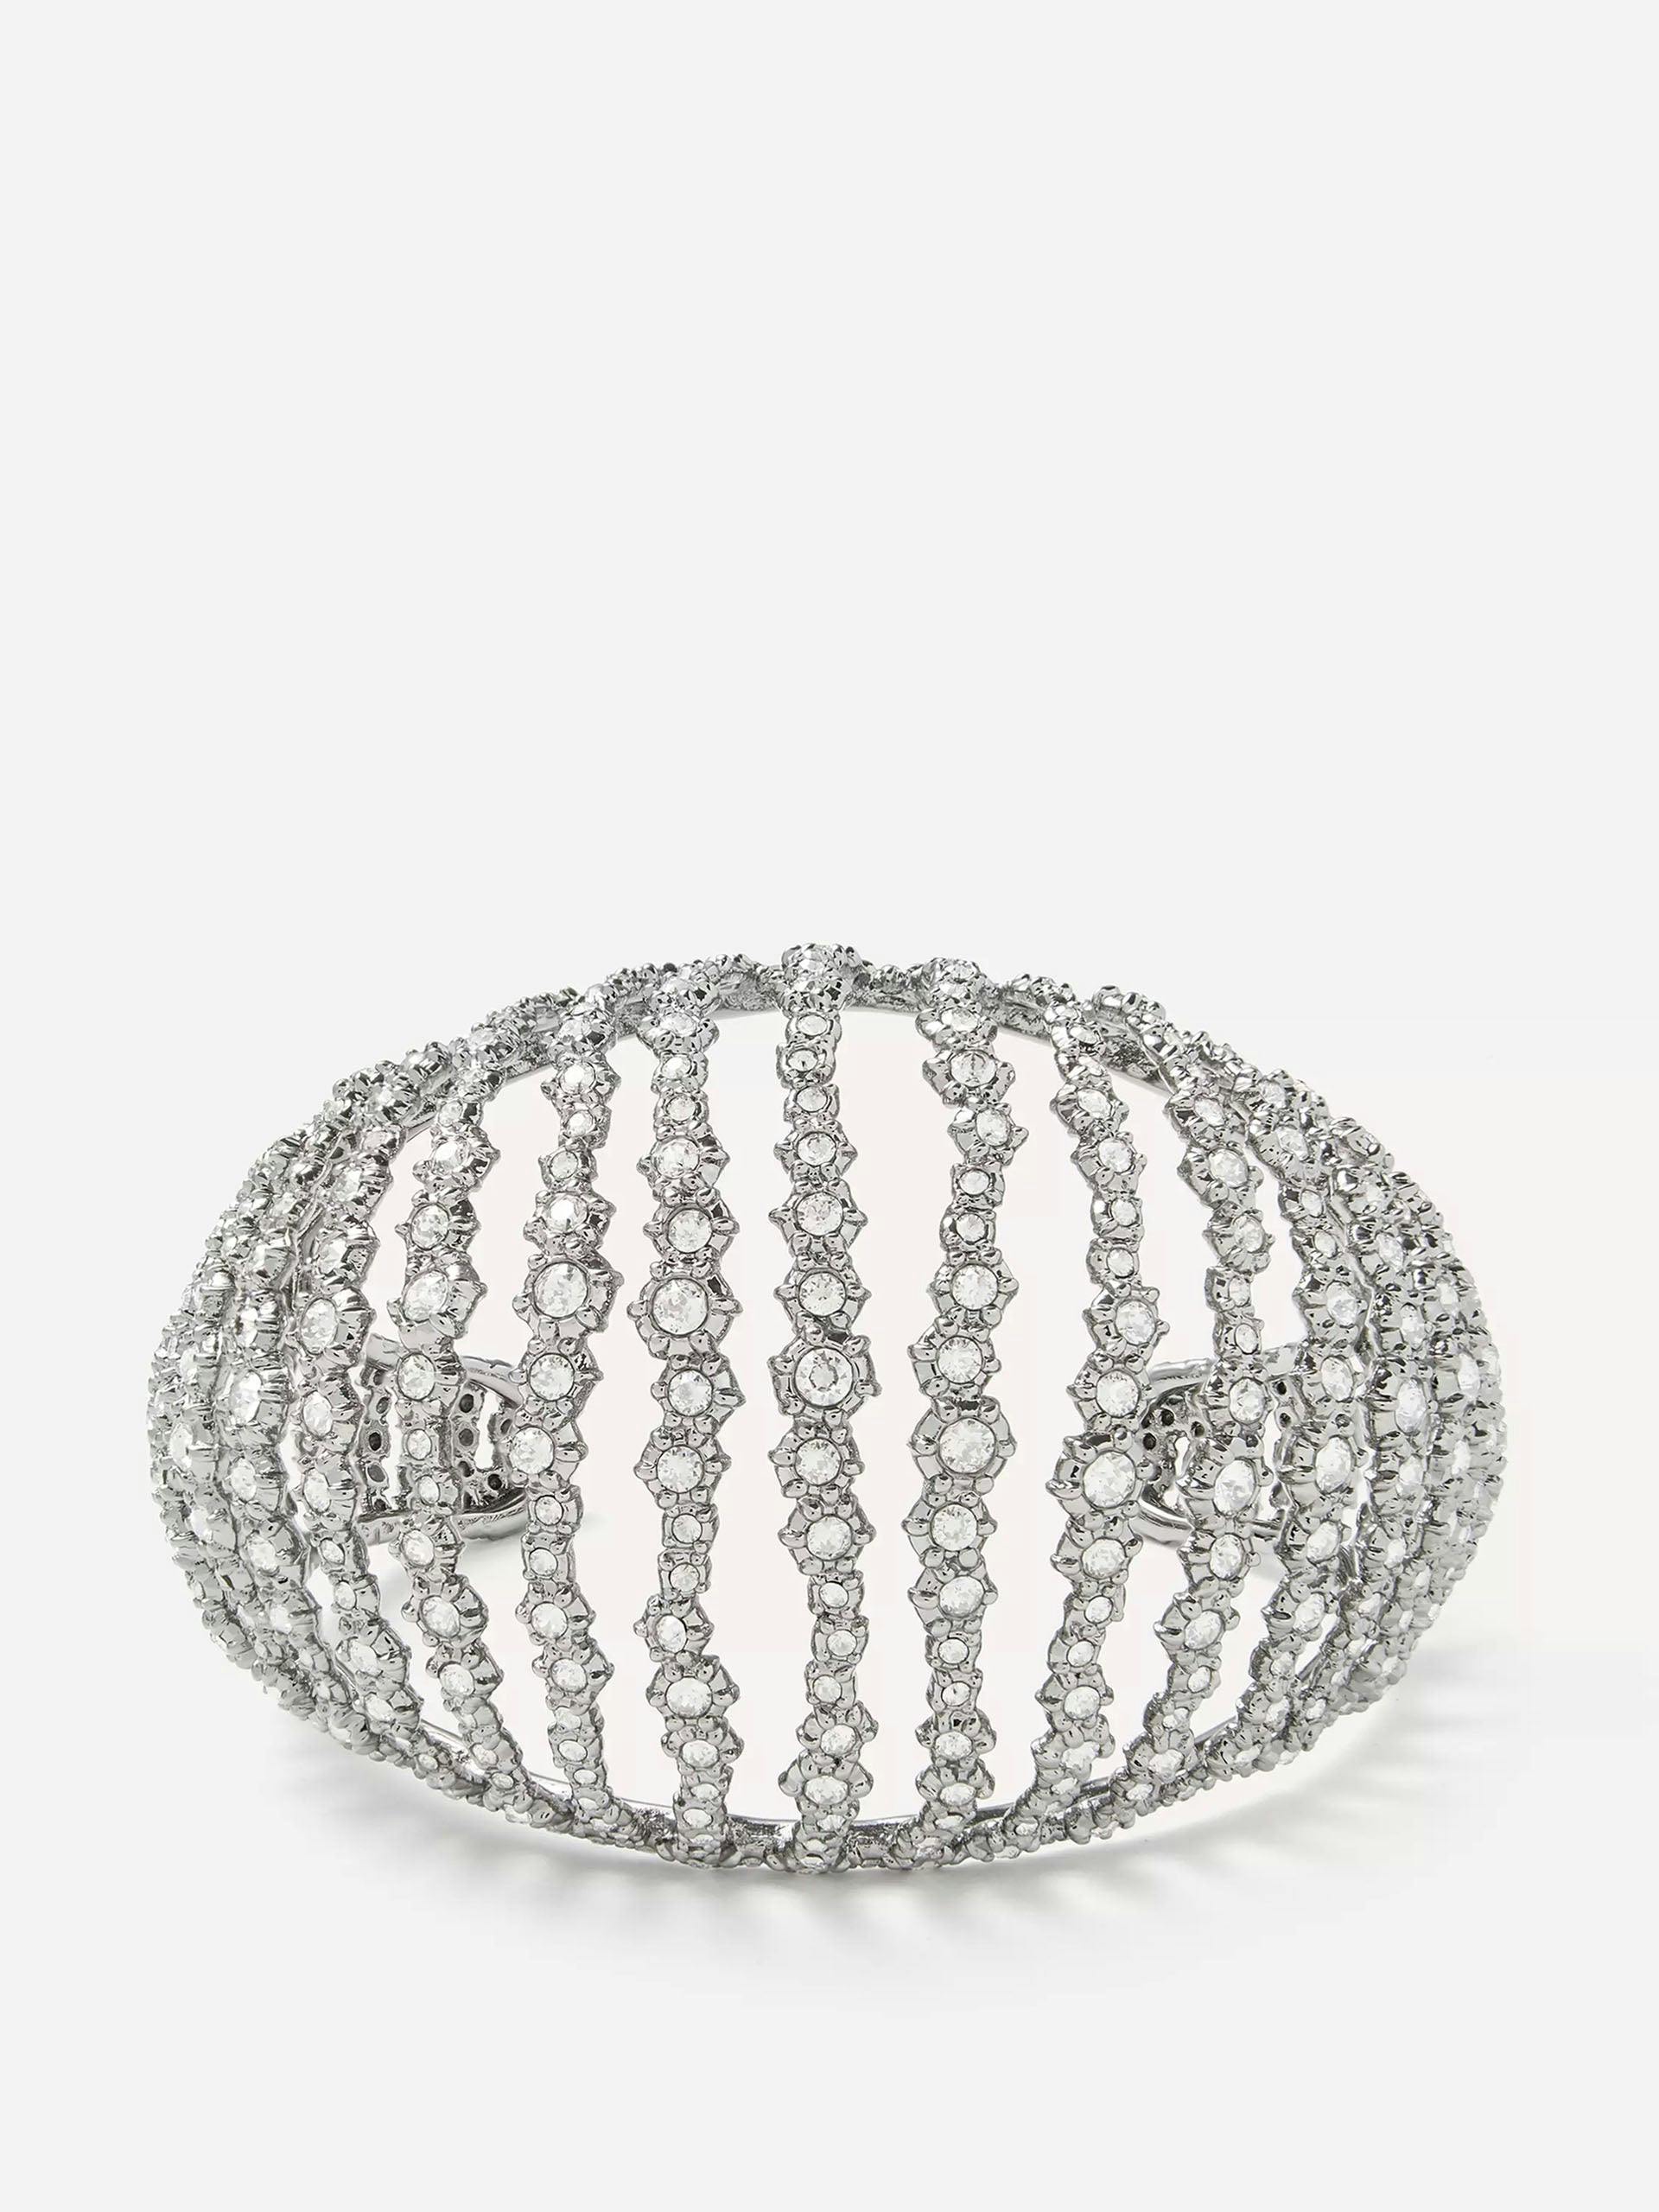 Crystal cuff bracelet